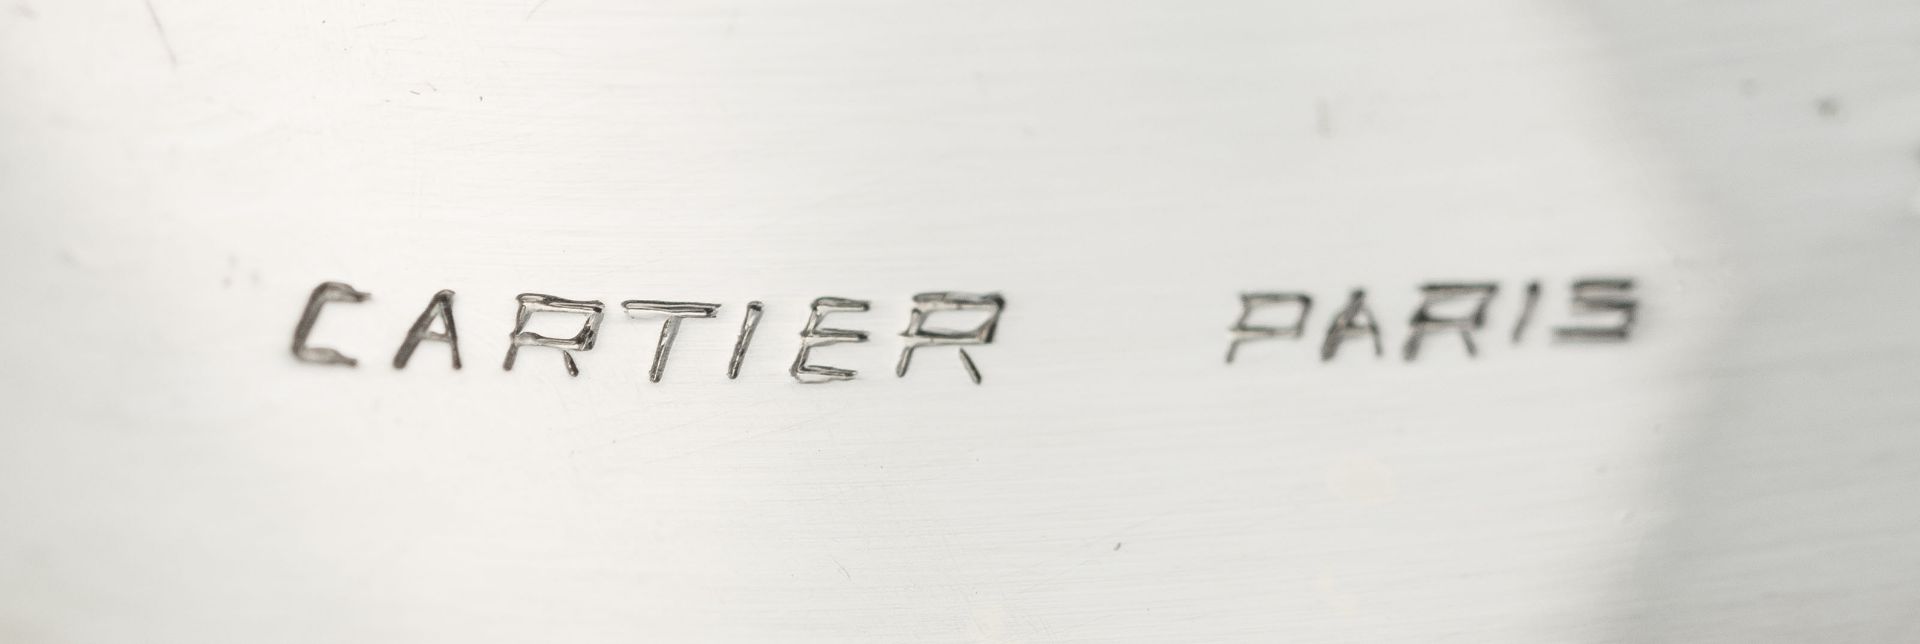 Cartier, monture par, broche or gris 750 et platine formant une grande feuille cintrée entièrement p - Image 11 of 12